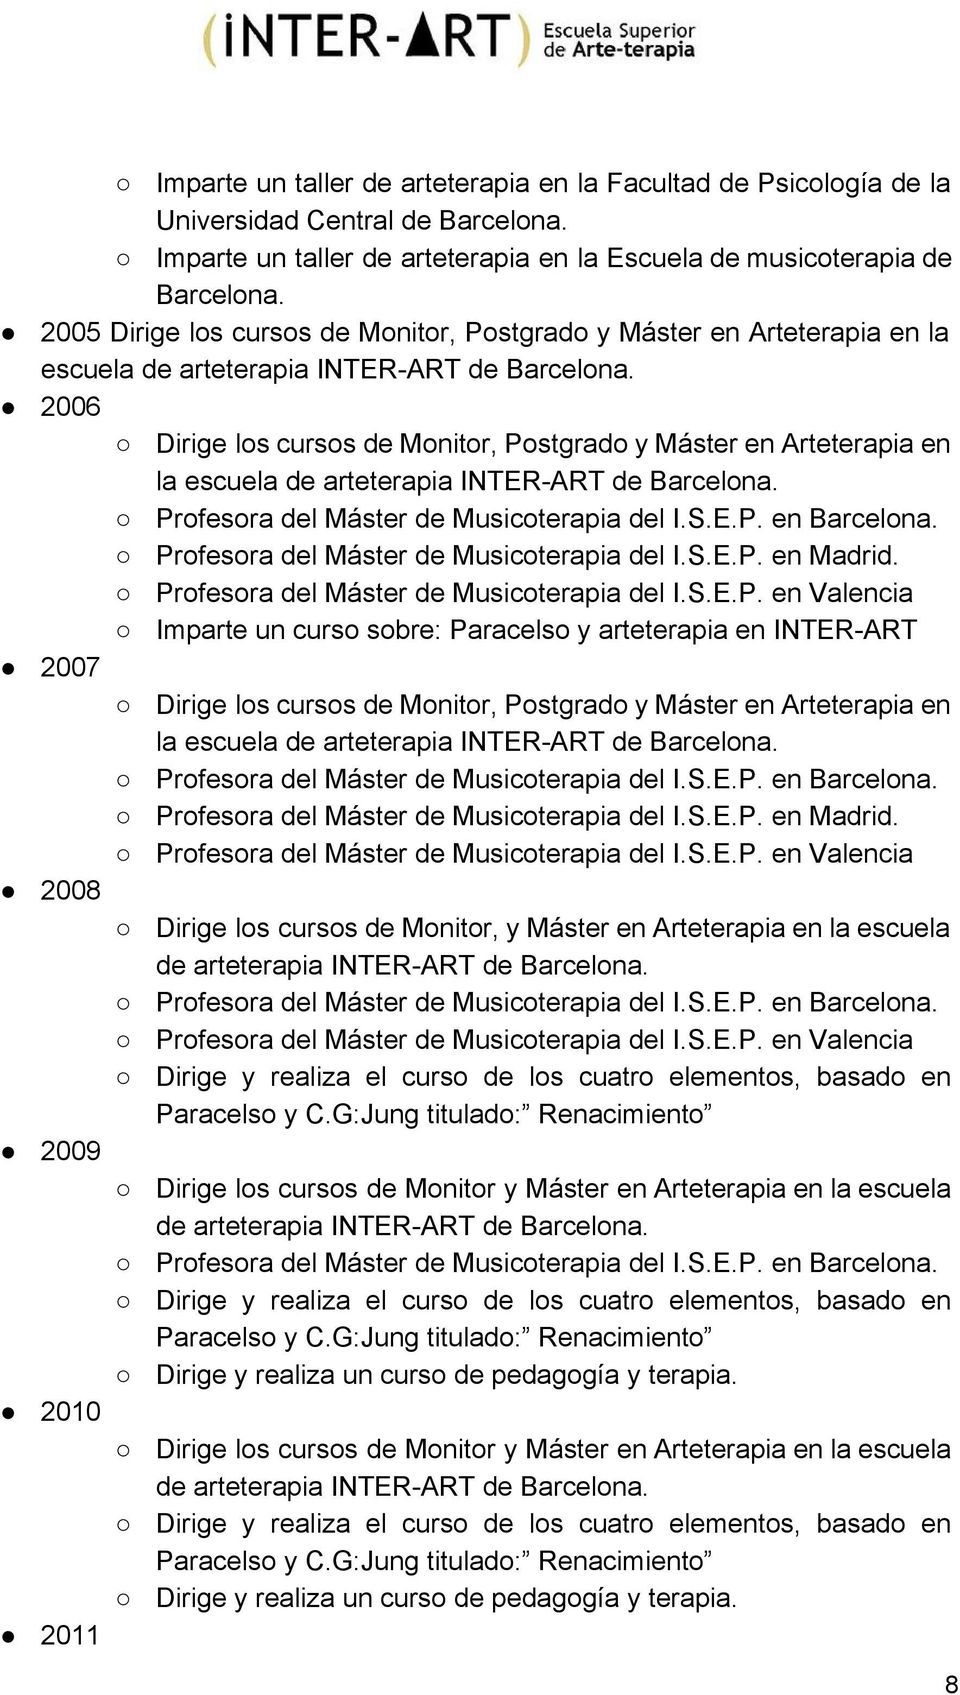 2006 Dirige los cursos de Monitor, Postgrado y Máster en Arteterapia en la escuela de arteterapia INTER ART de Barcelona. Profesora del Máster de Musicoterapia del I.S.E.P. en Barcelona.